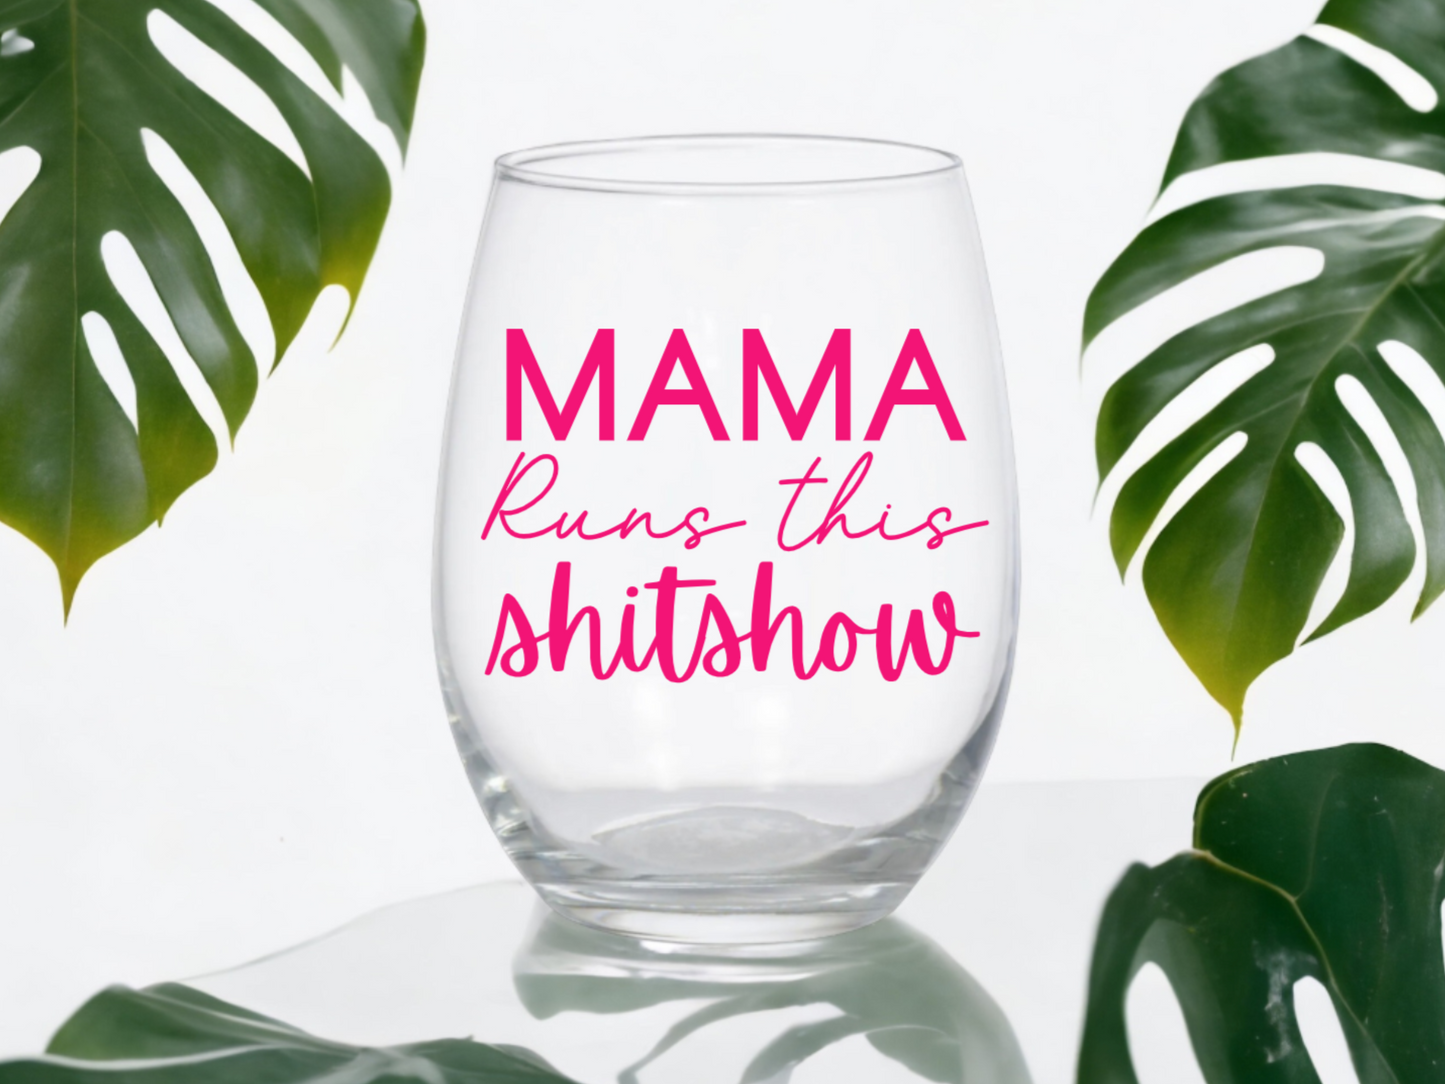 Mama Runs This Shit Show Wine Glass